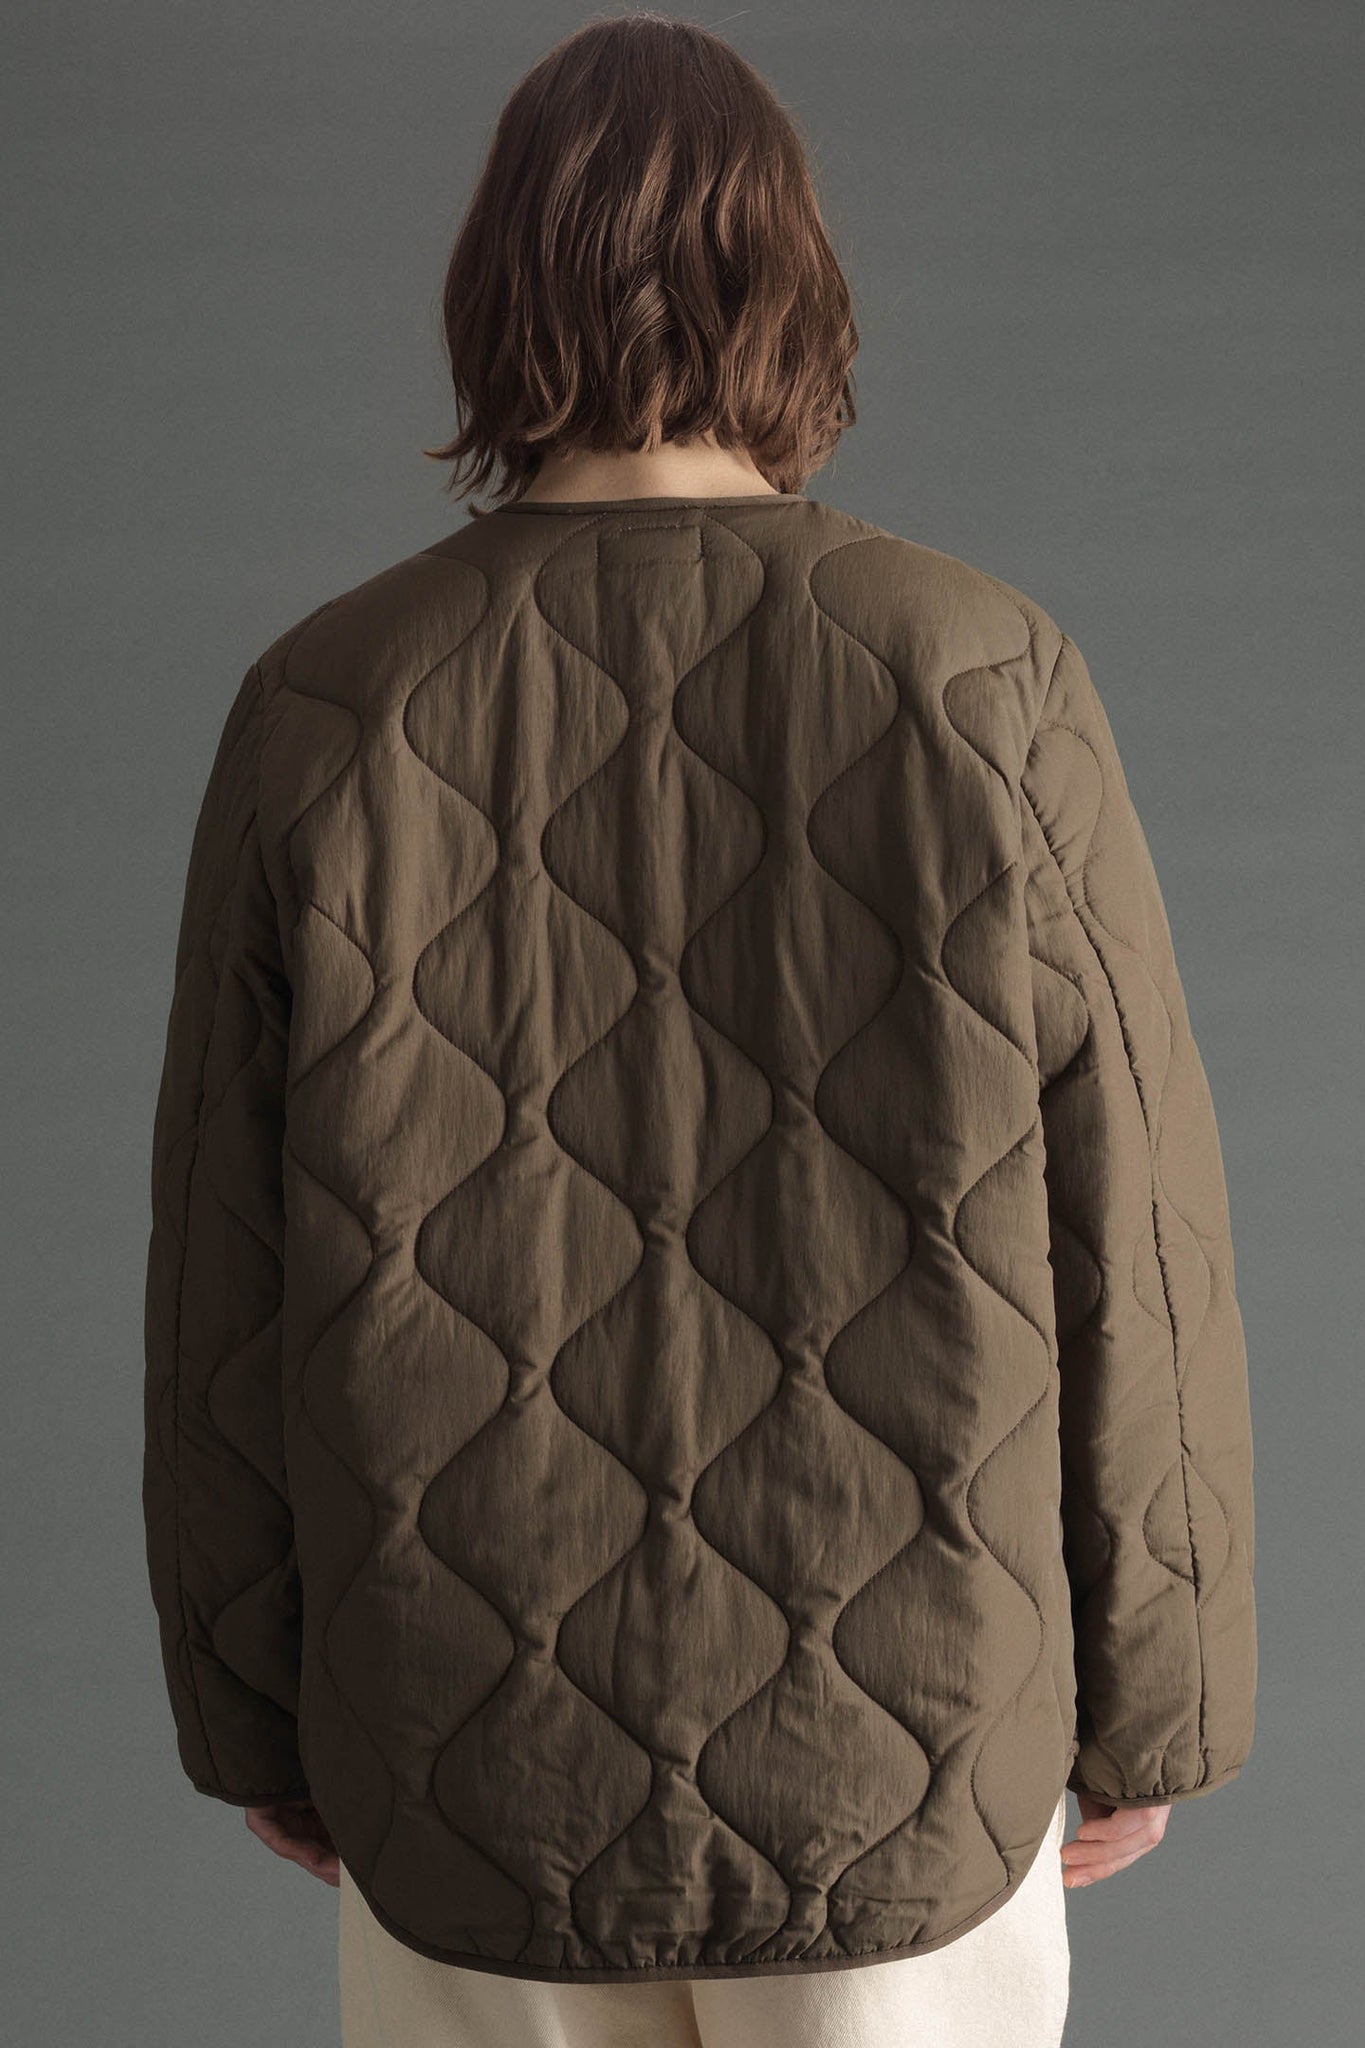 Highland jacket by Hope - olive quilt